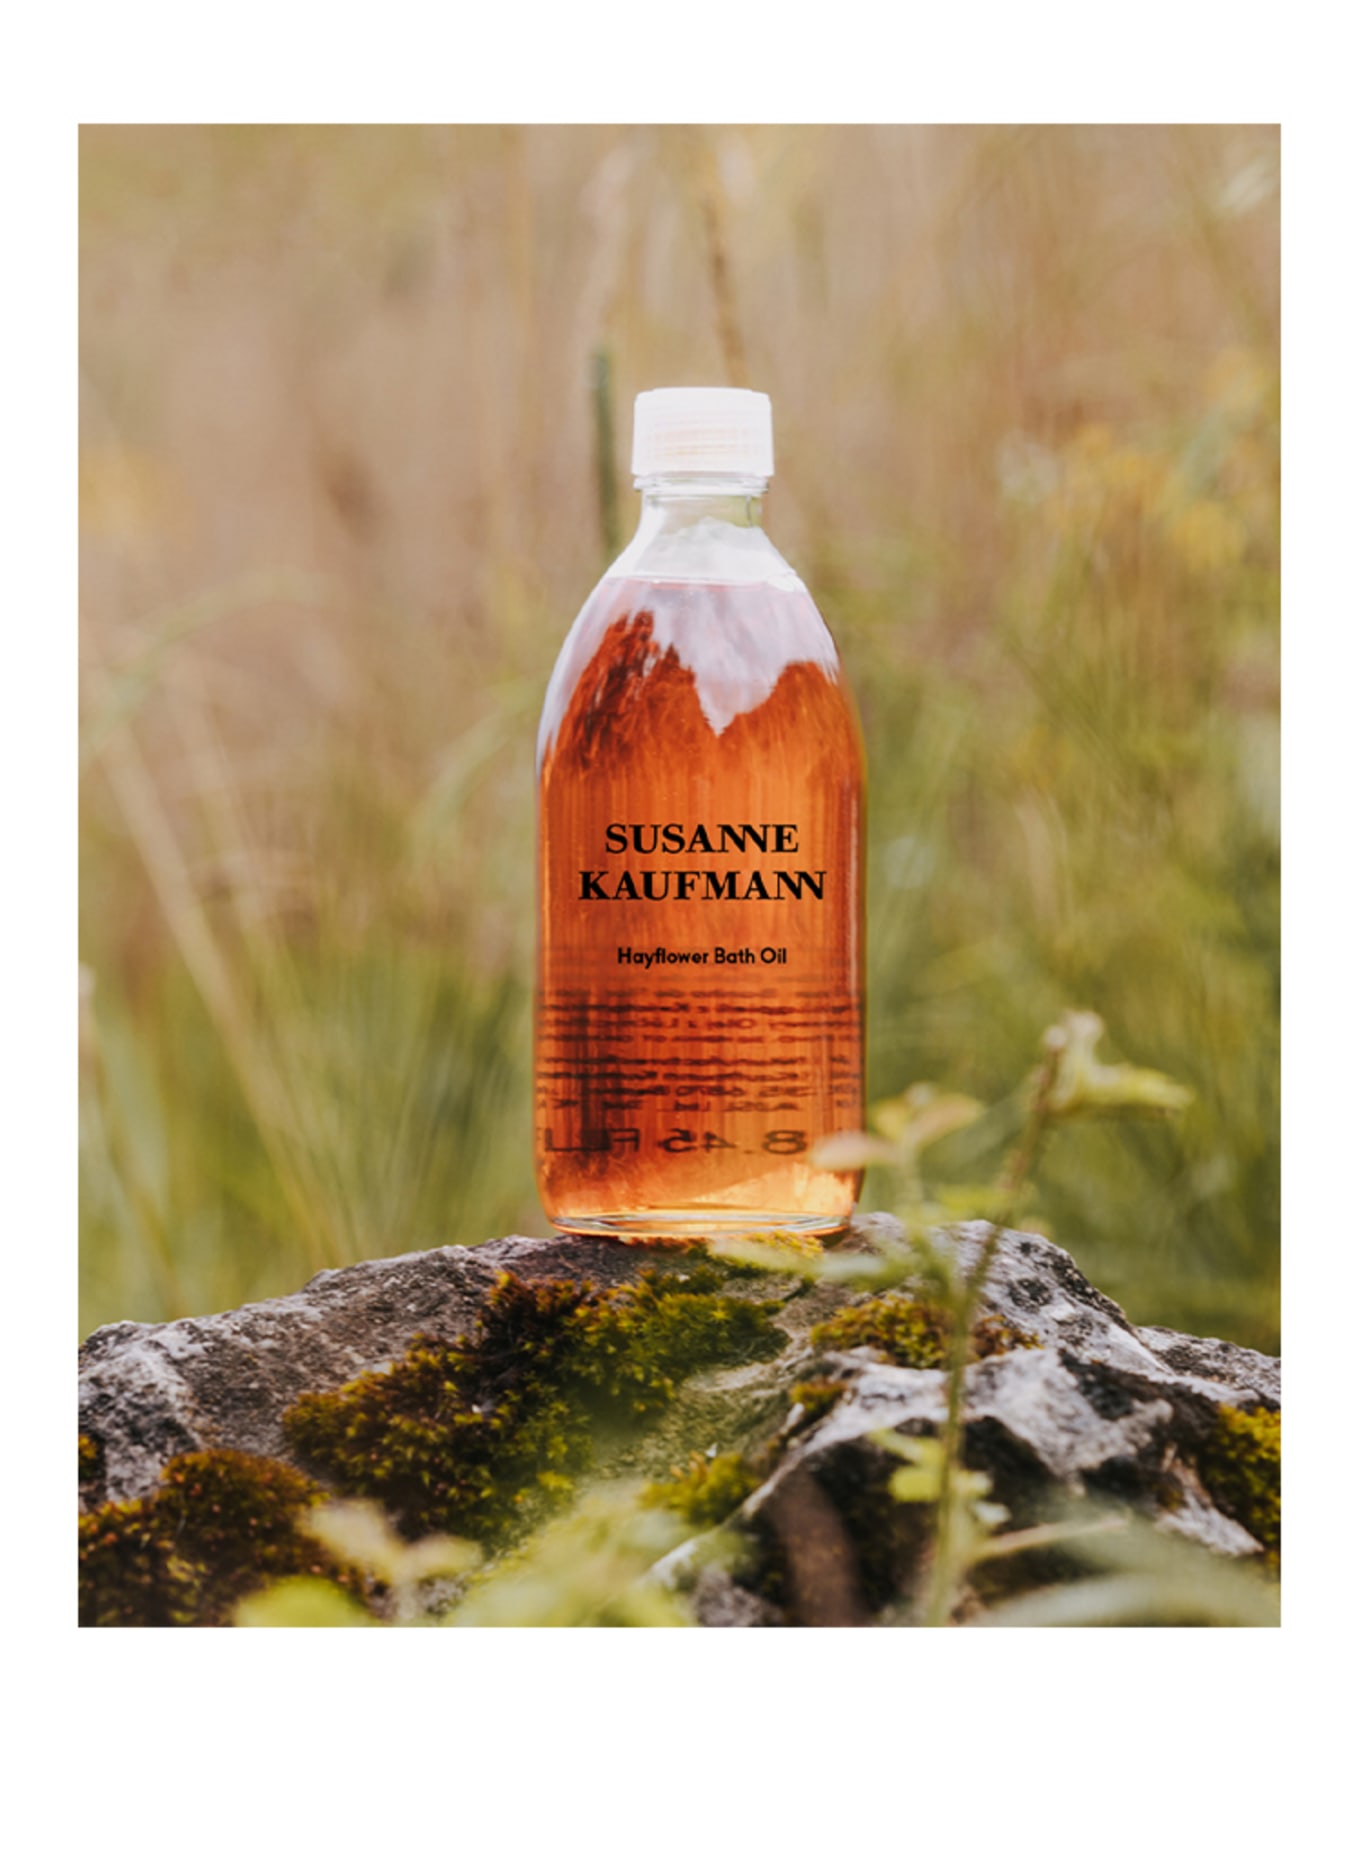 SUSANNE KAUFMANN HAYFLOWER BATH OIL (Bild 2)